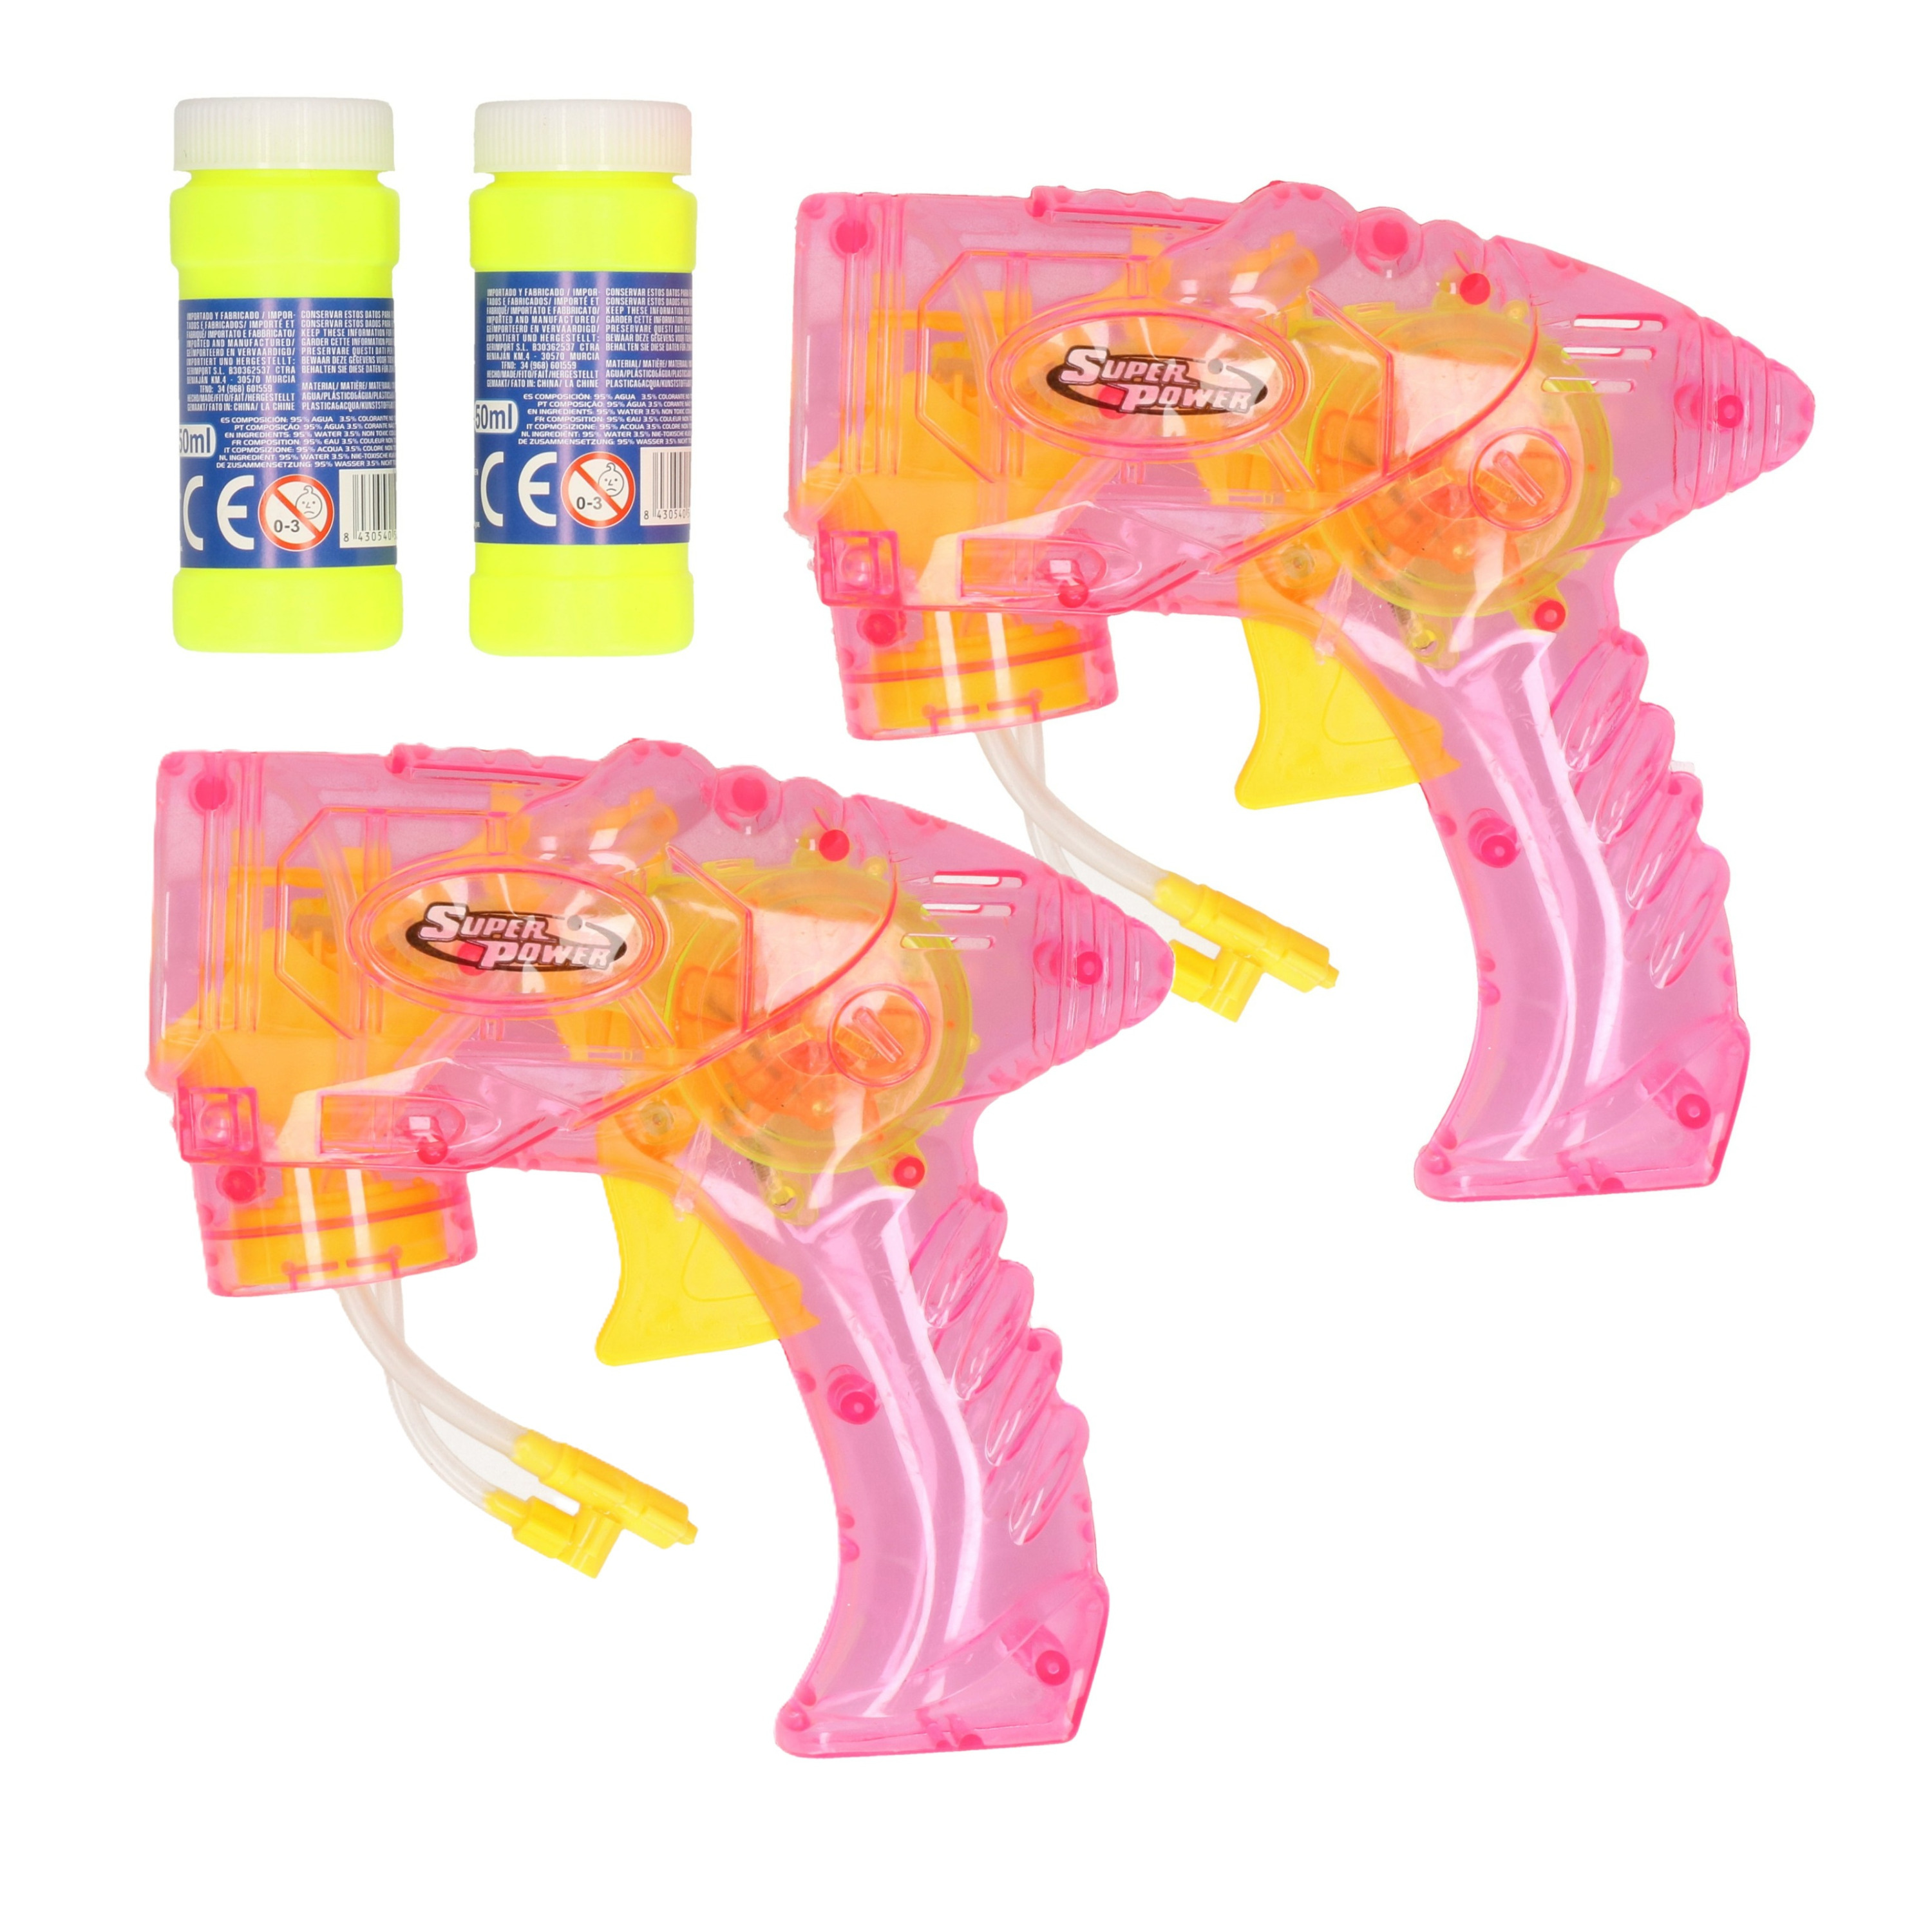 Bellenblaas speelgoed pistool 2x met vullingen roze 15 cm plastic bellen blazen